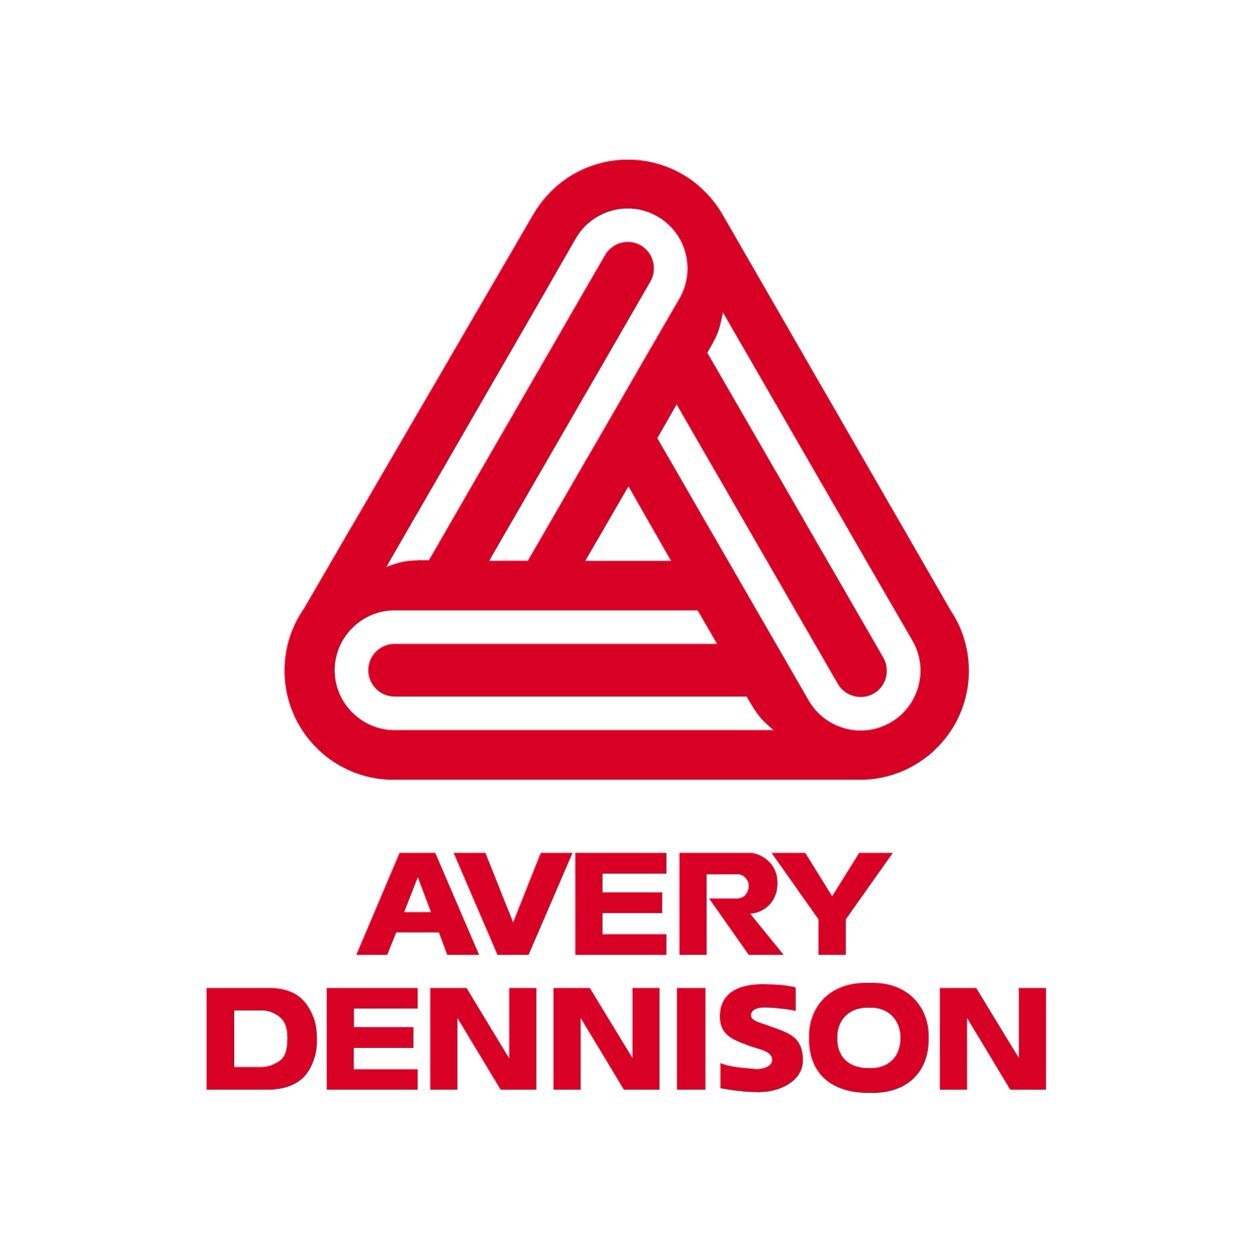 Acrylic Foam Bond (AFB™) Klebeband von Avery Dennison wird für Anwendungen verwendet, die eine Hochleistungsverbindung erfordern.